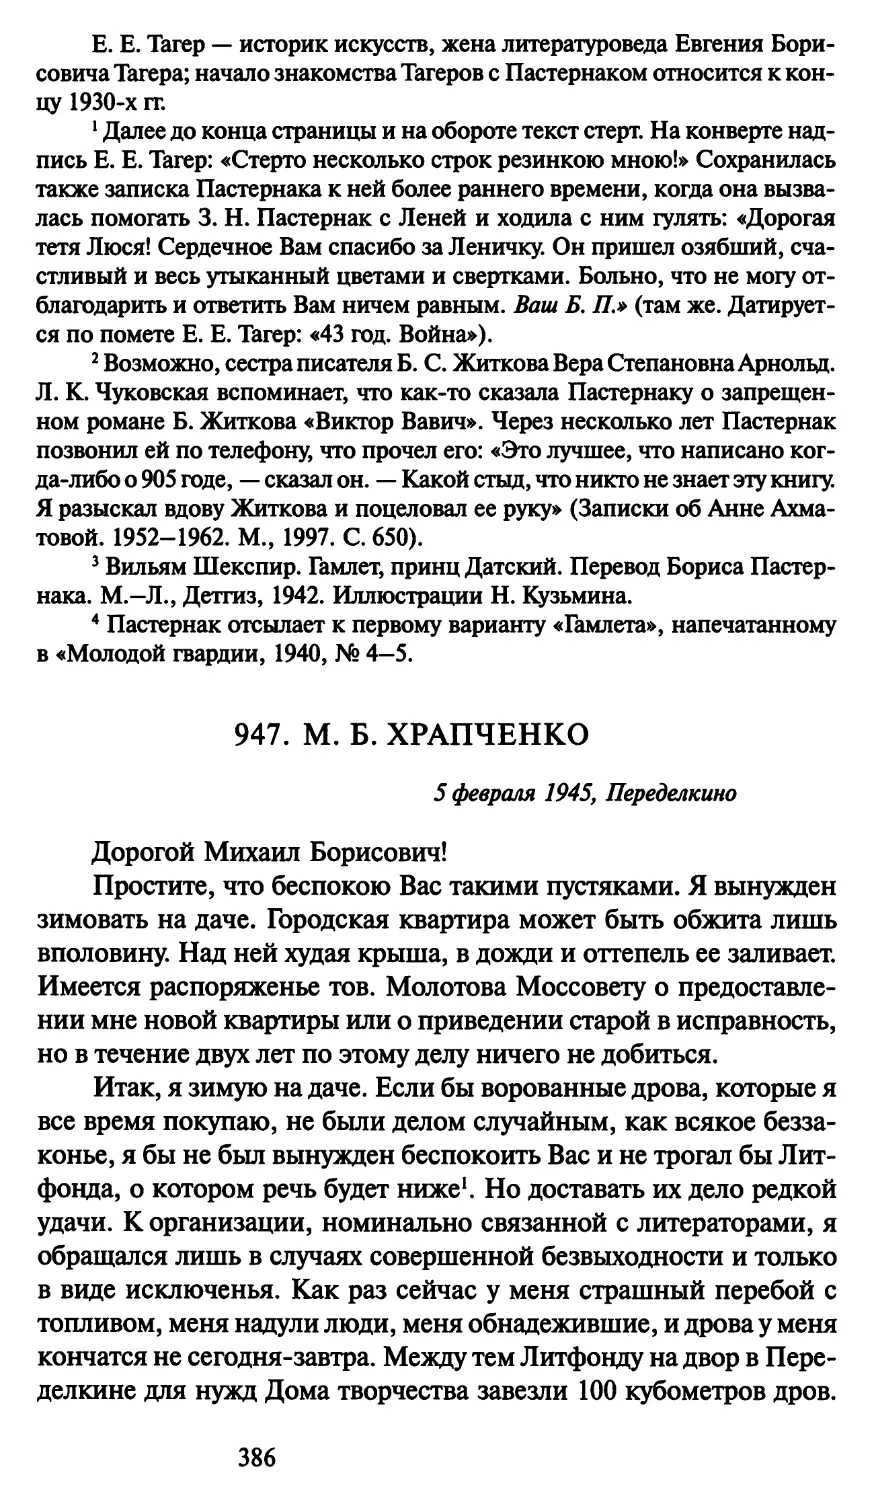 947. М. Б. Храпченко 5 февраля 1945